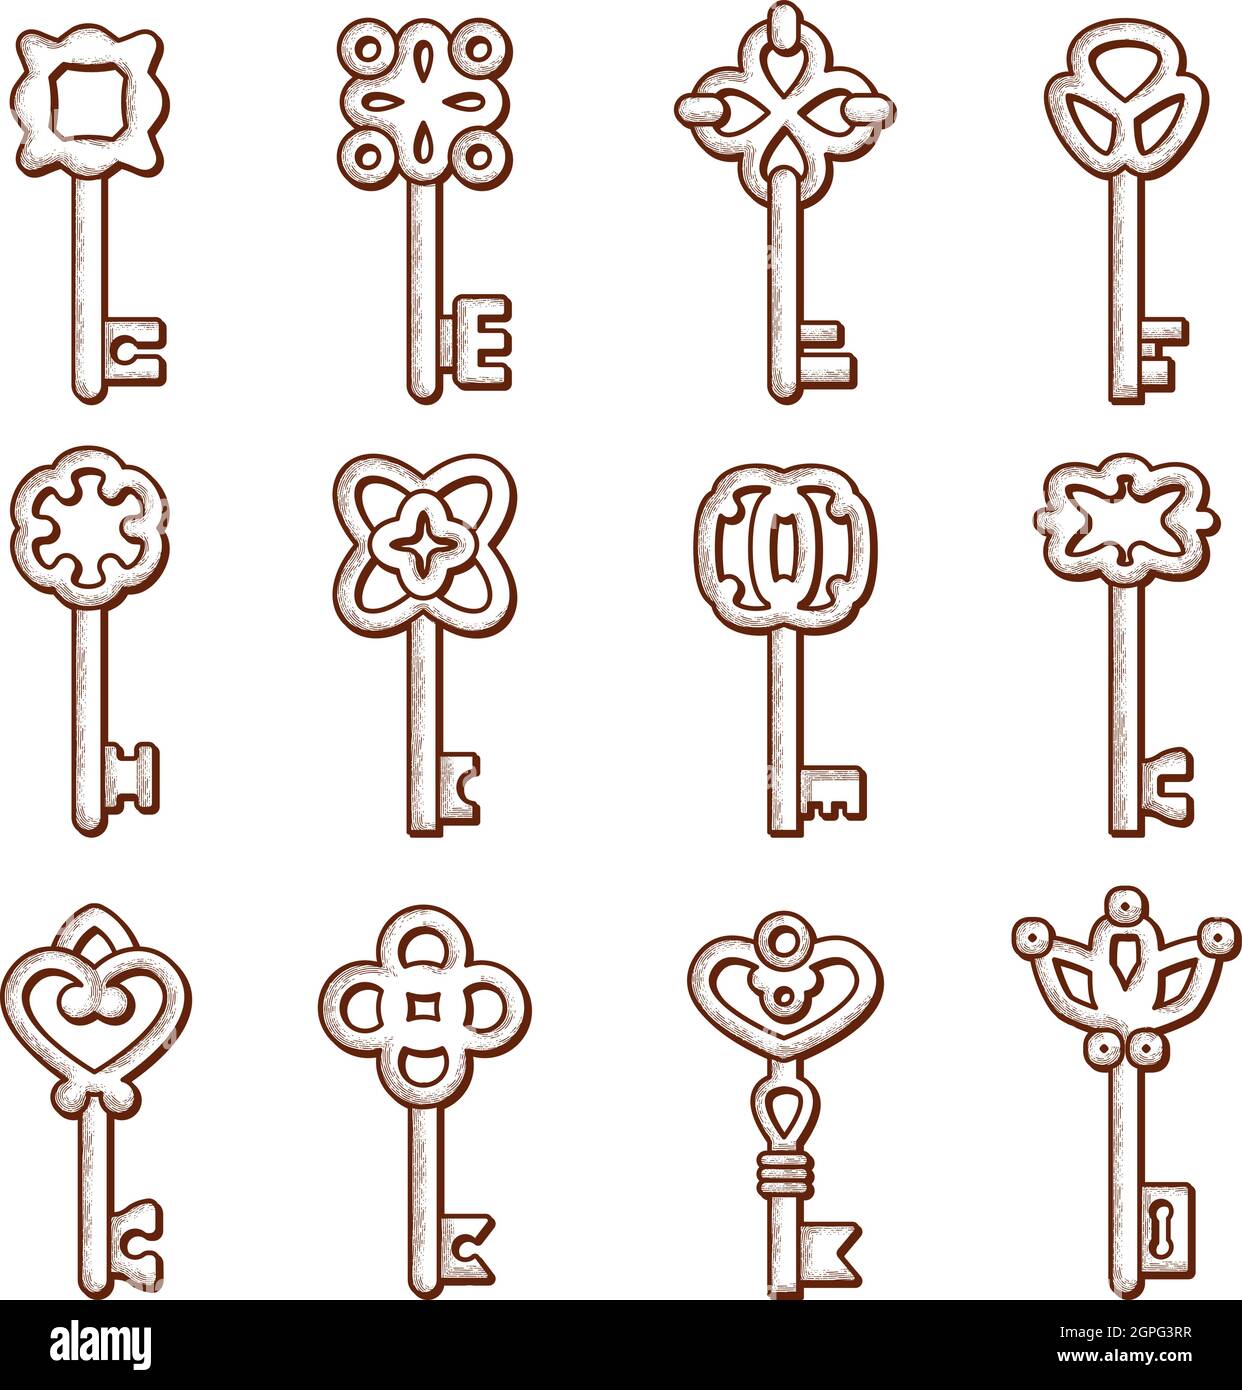 Icona tasti. Silhouette di chiavi e serrature vecchio stile vittoriano vettore elegante collezione di logo Illustrazione Vettoriale